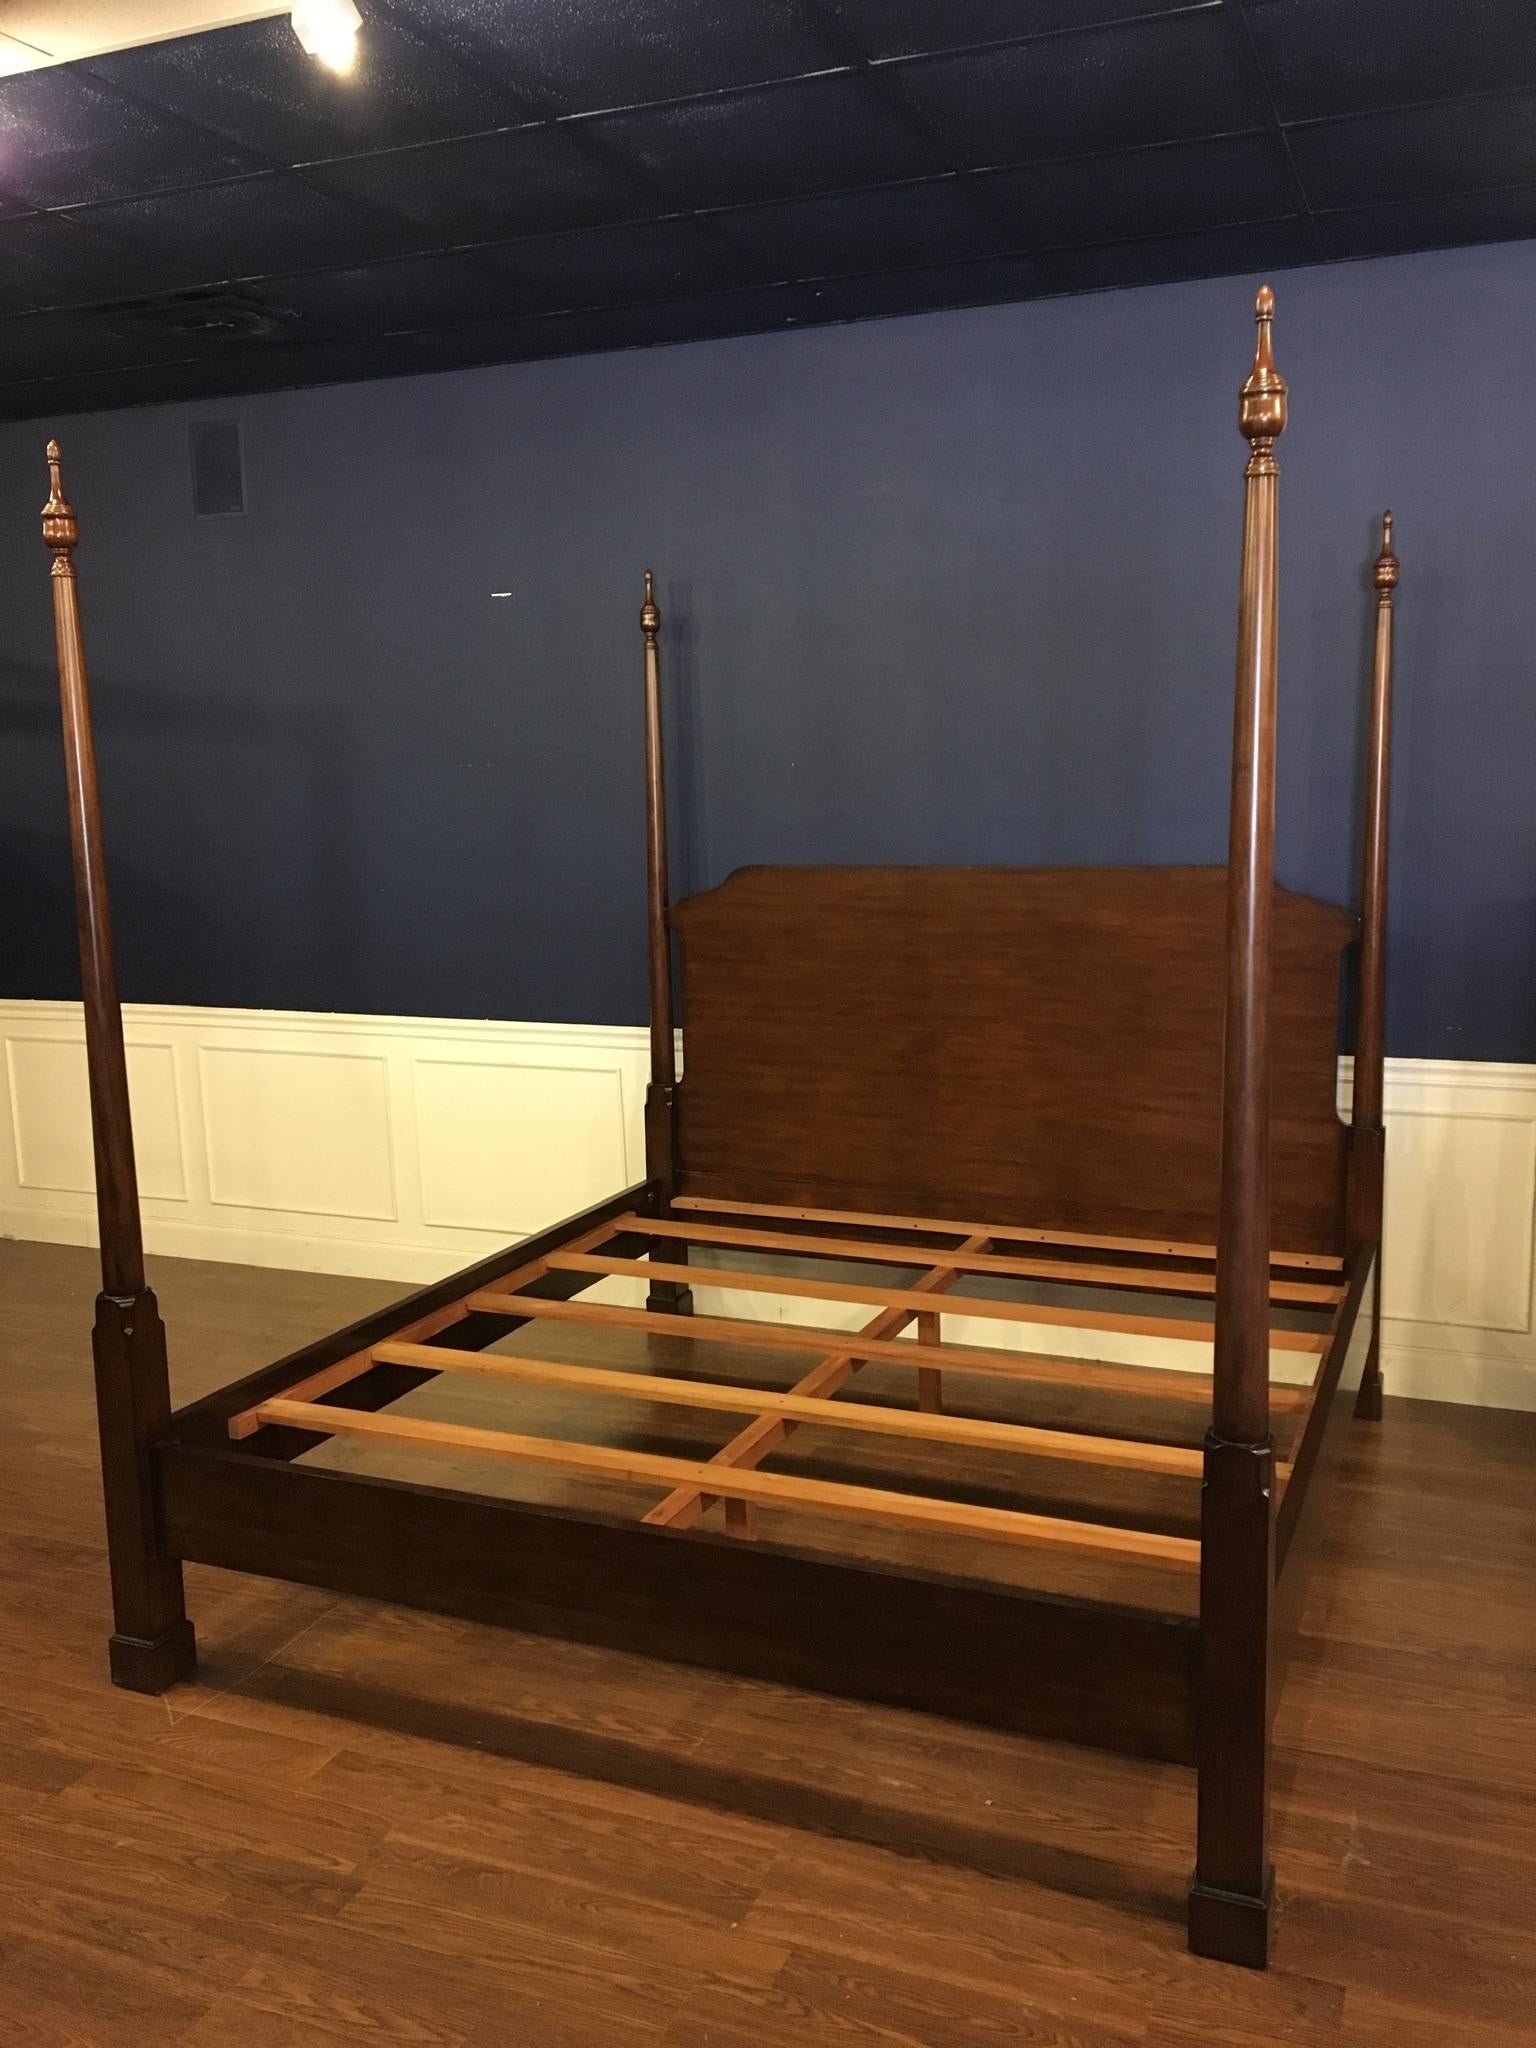 Il s'agit d'un nouveau lit traditionnel king size Pencil Post en acajou, fabriqué par Leighton Hall Furniture. Son design s'inspire des lits à baldaquin de la période de la Régence et se caractérise par des montants simples, ronds et effilés et une